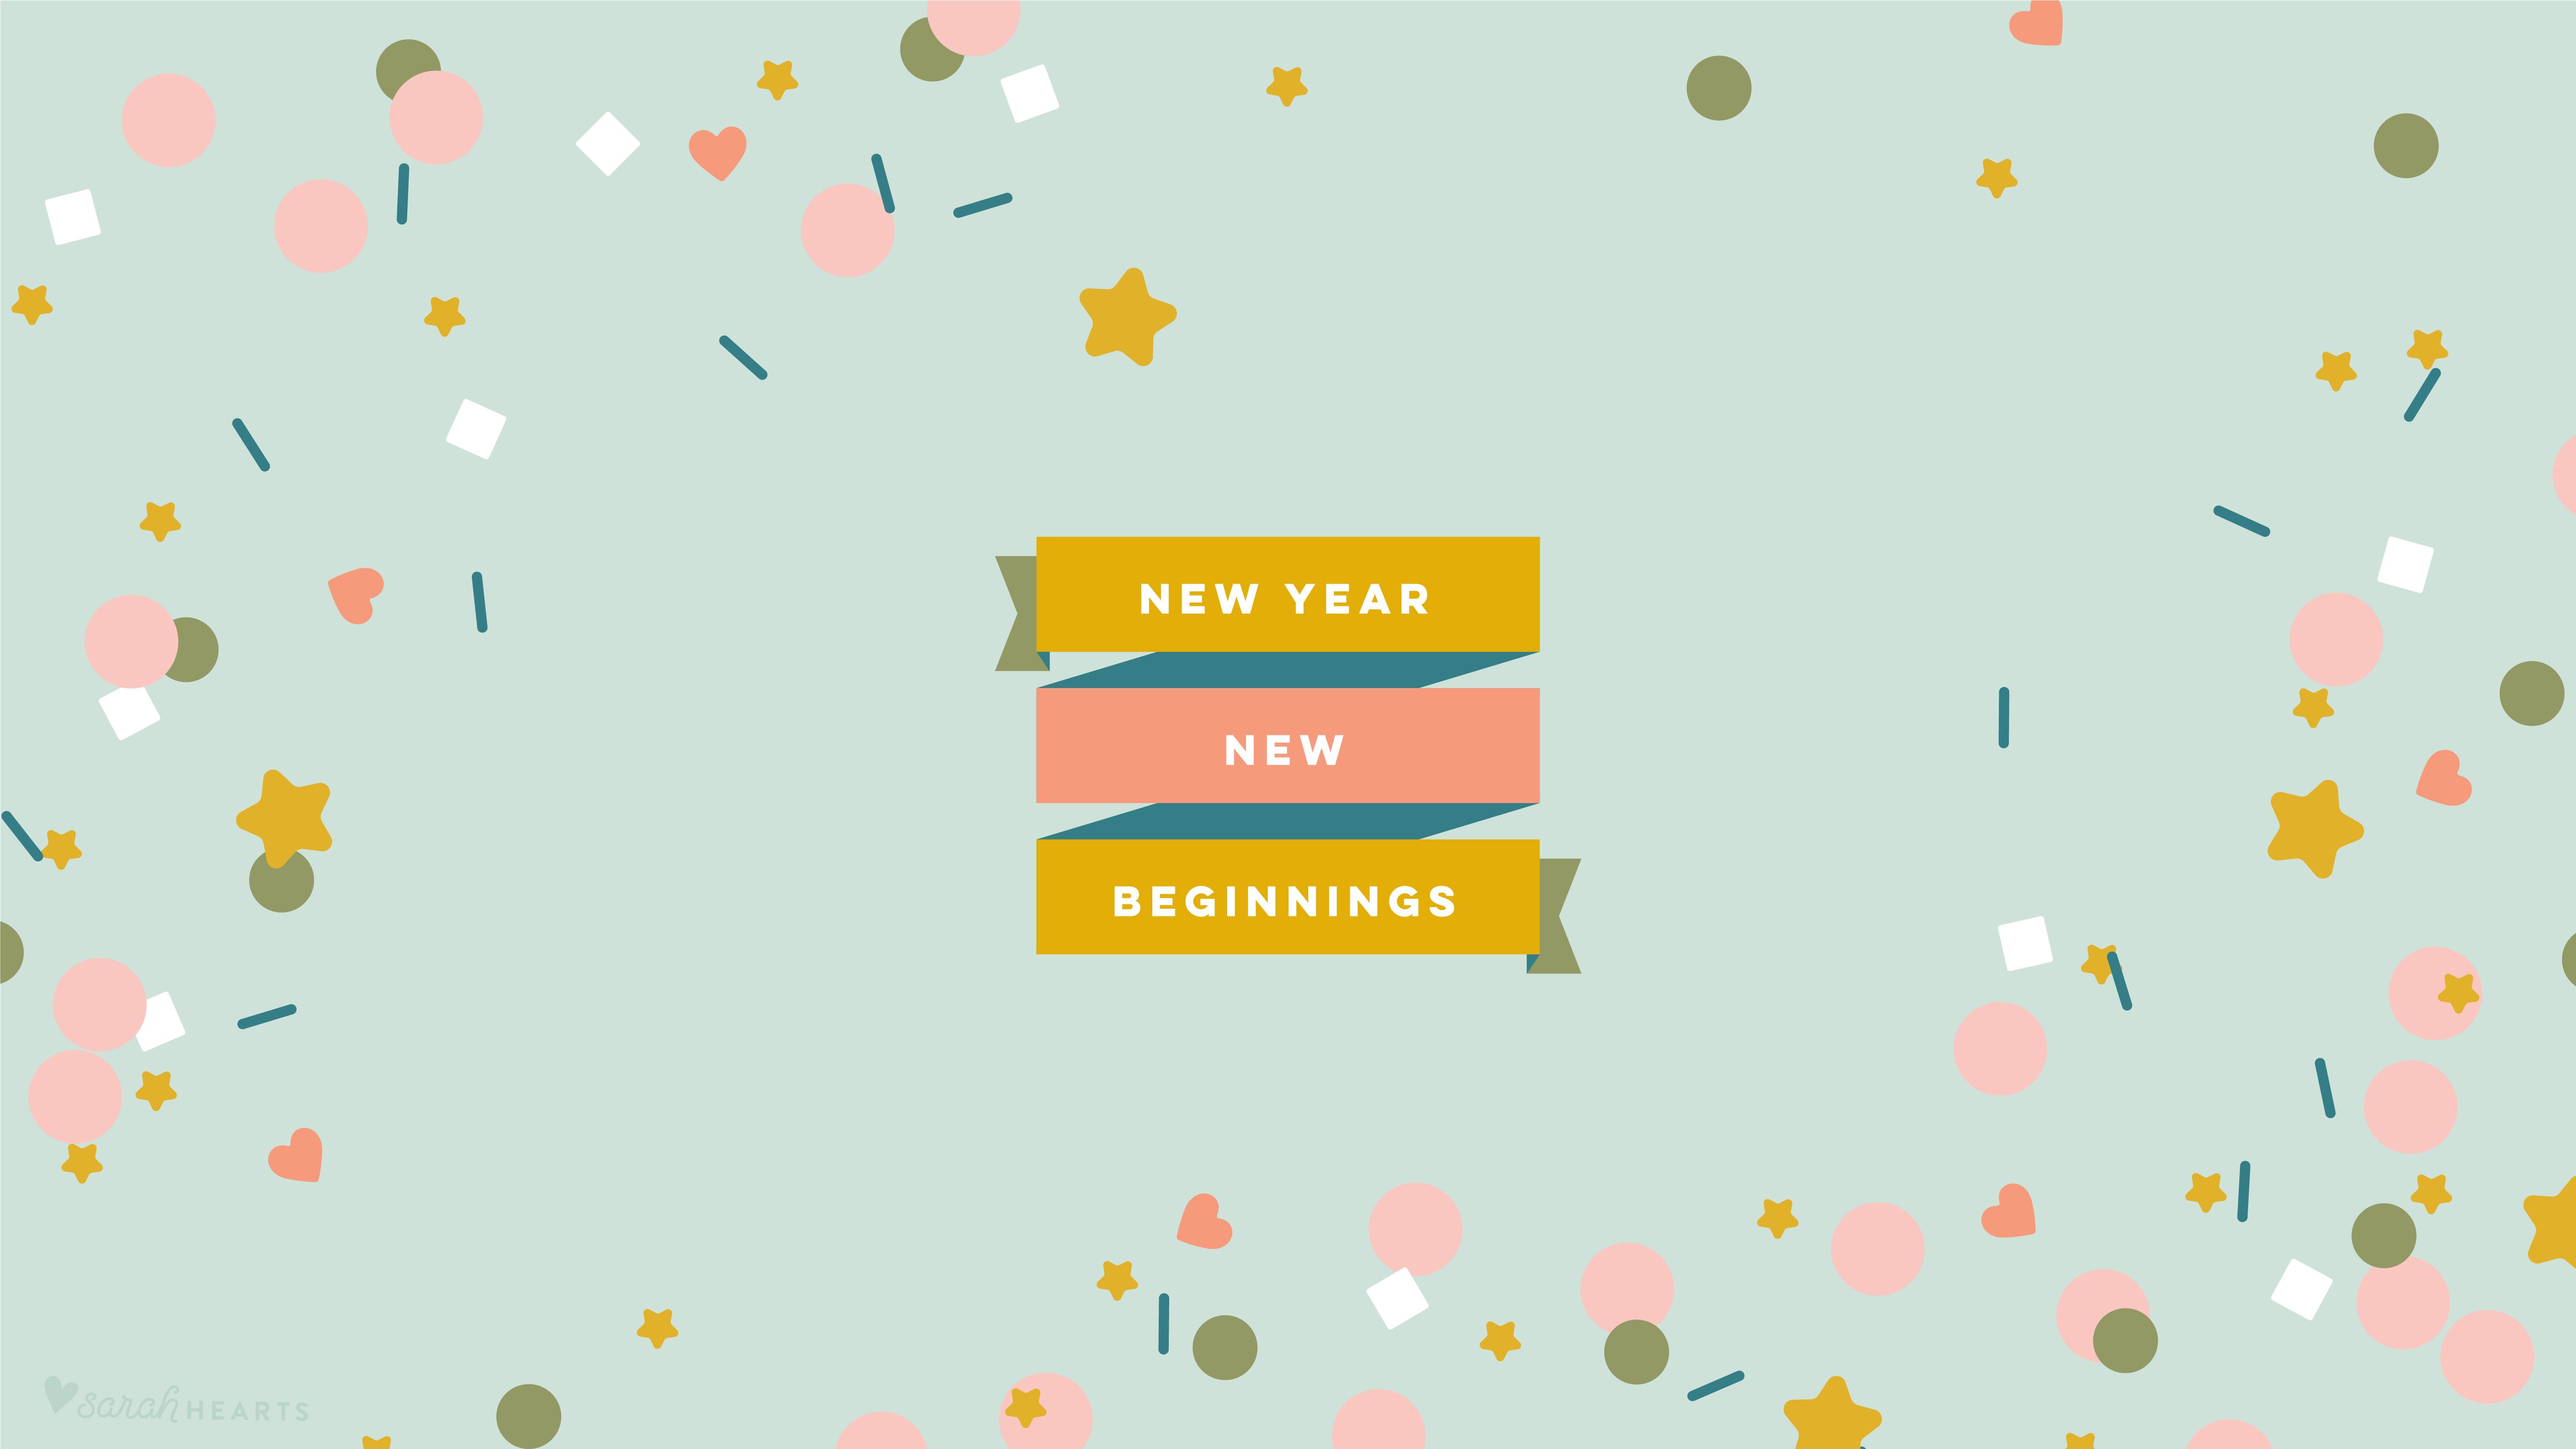 New Year, New Beginnings - New Year